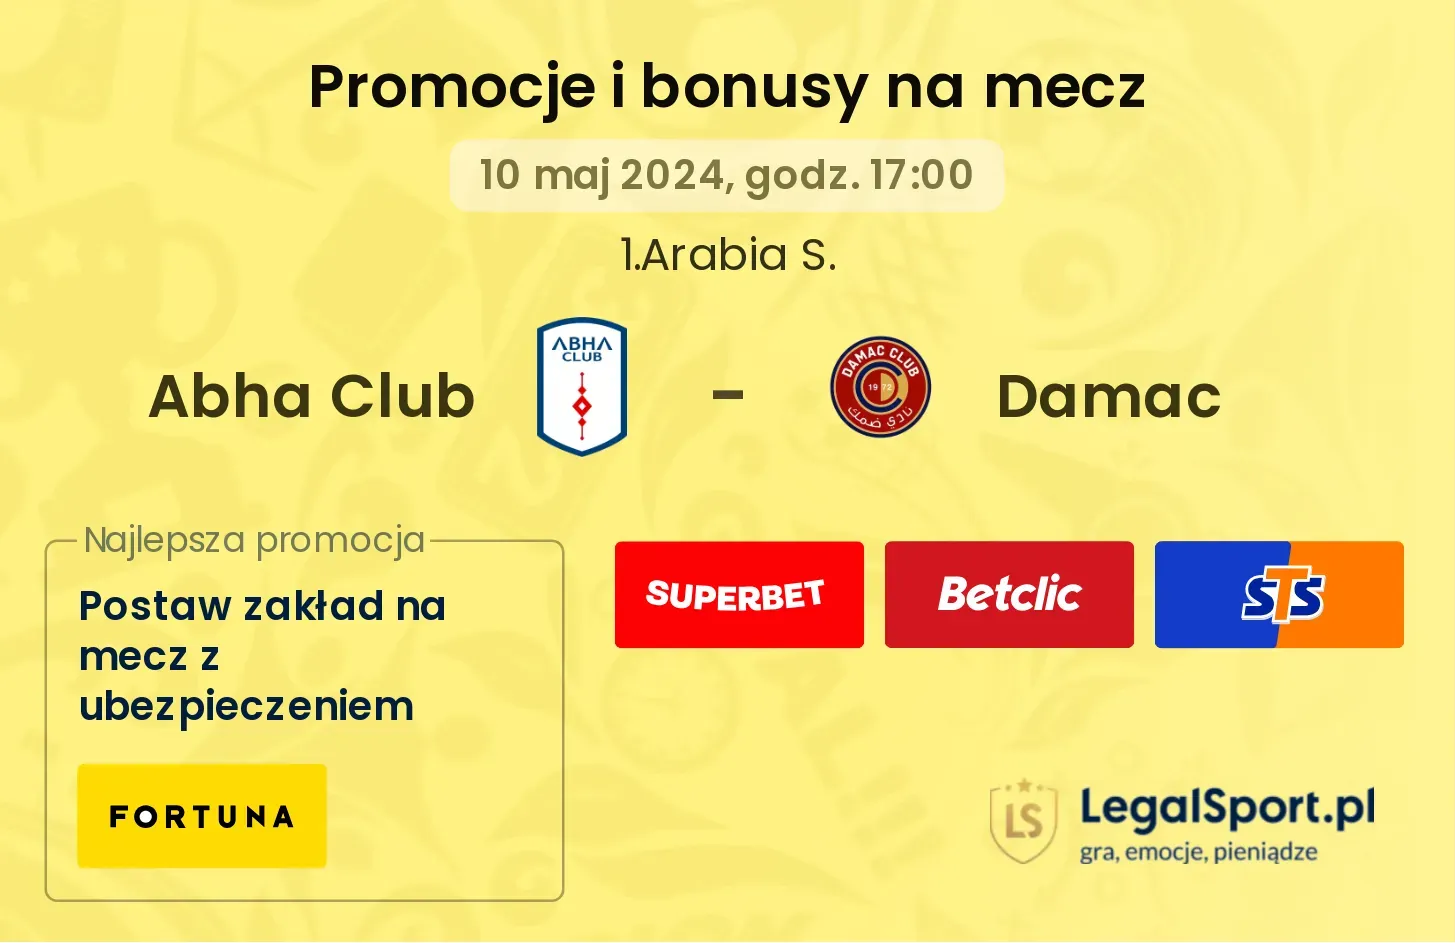 Abha Club - Damac promocje bonusy na mecz